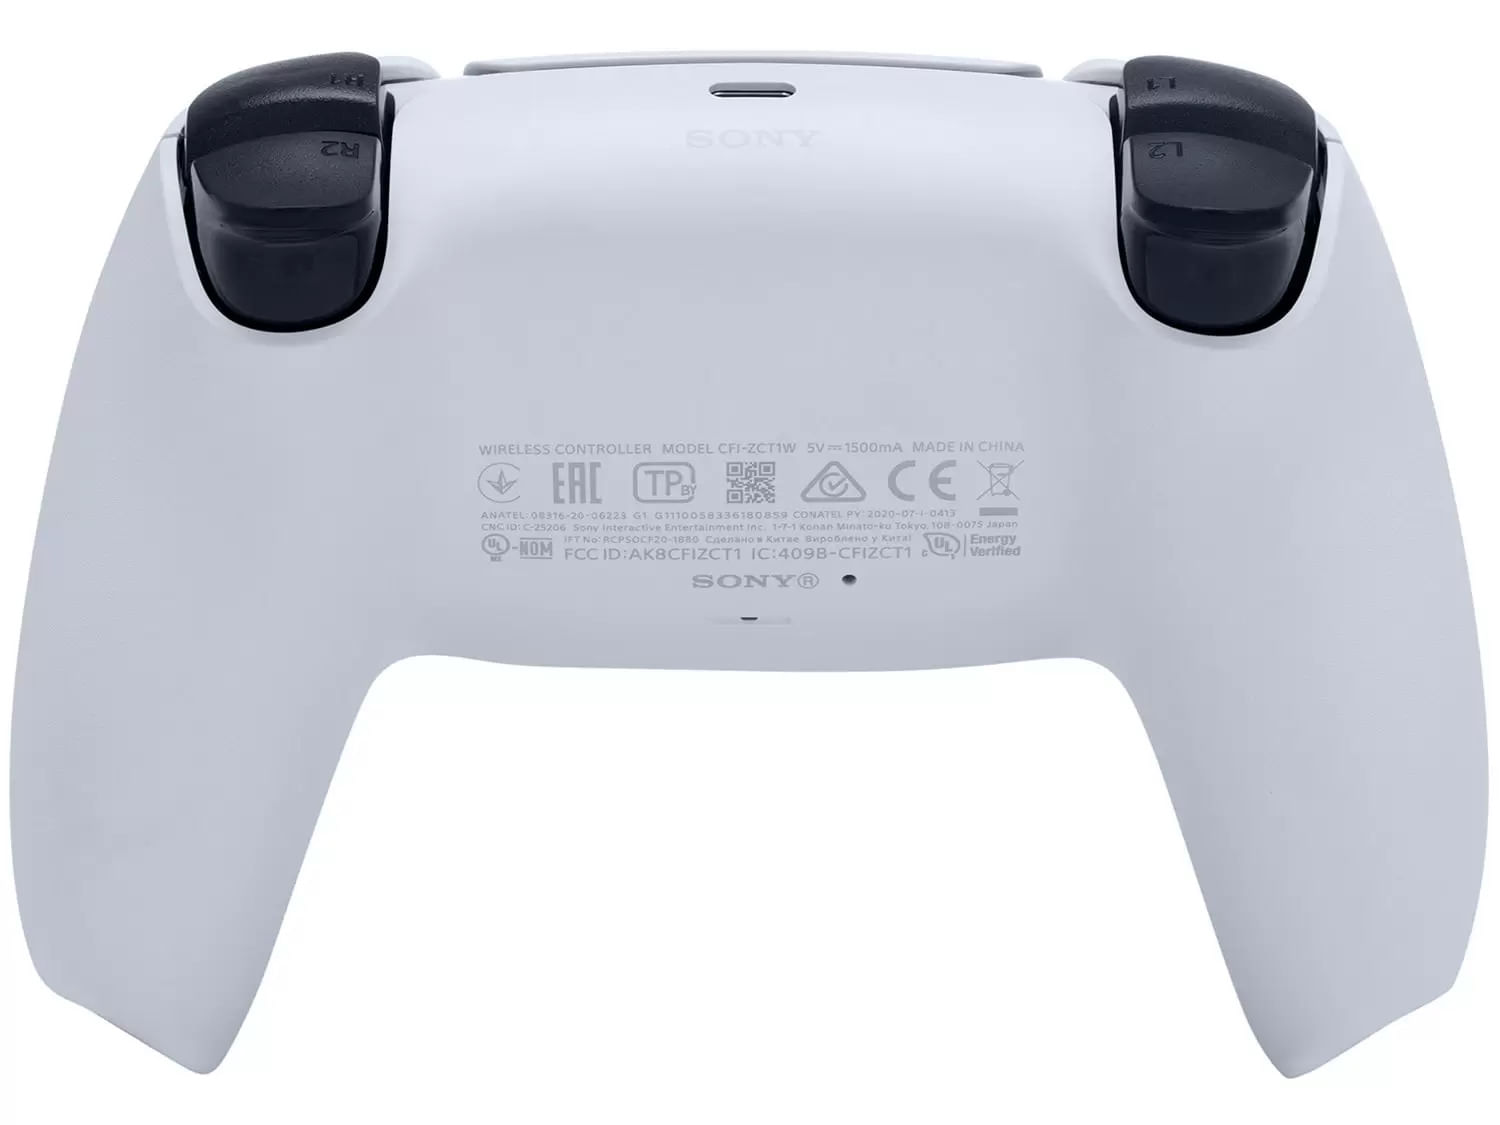 Console Playstation 5 Ps5 2 Controles Ps5 Pronta Entrega